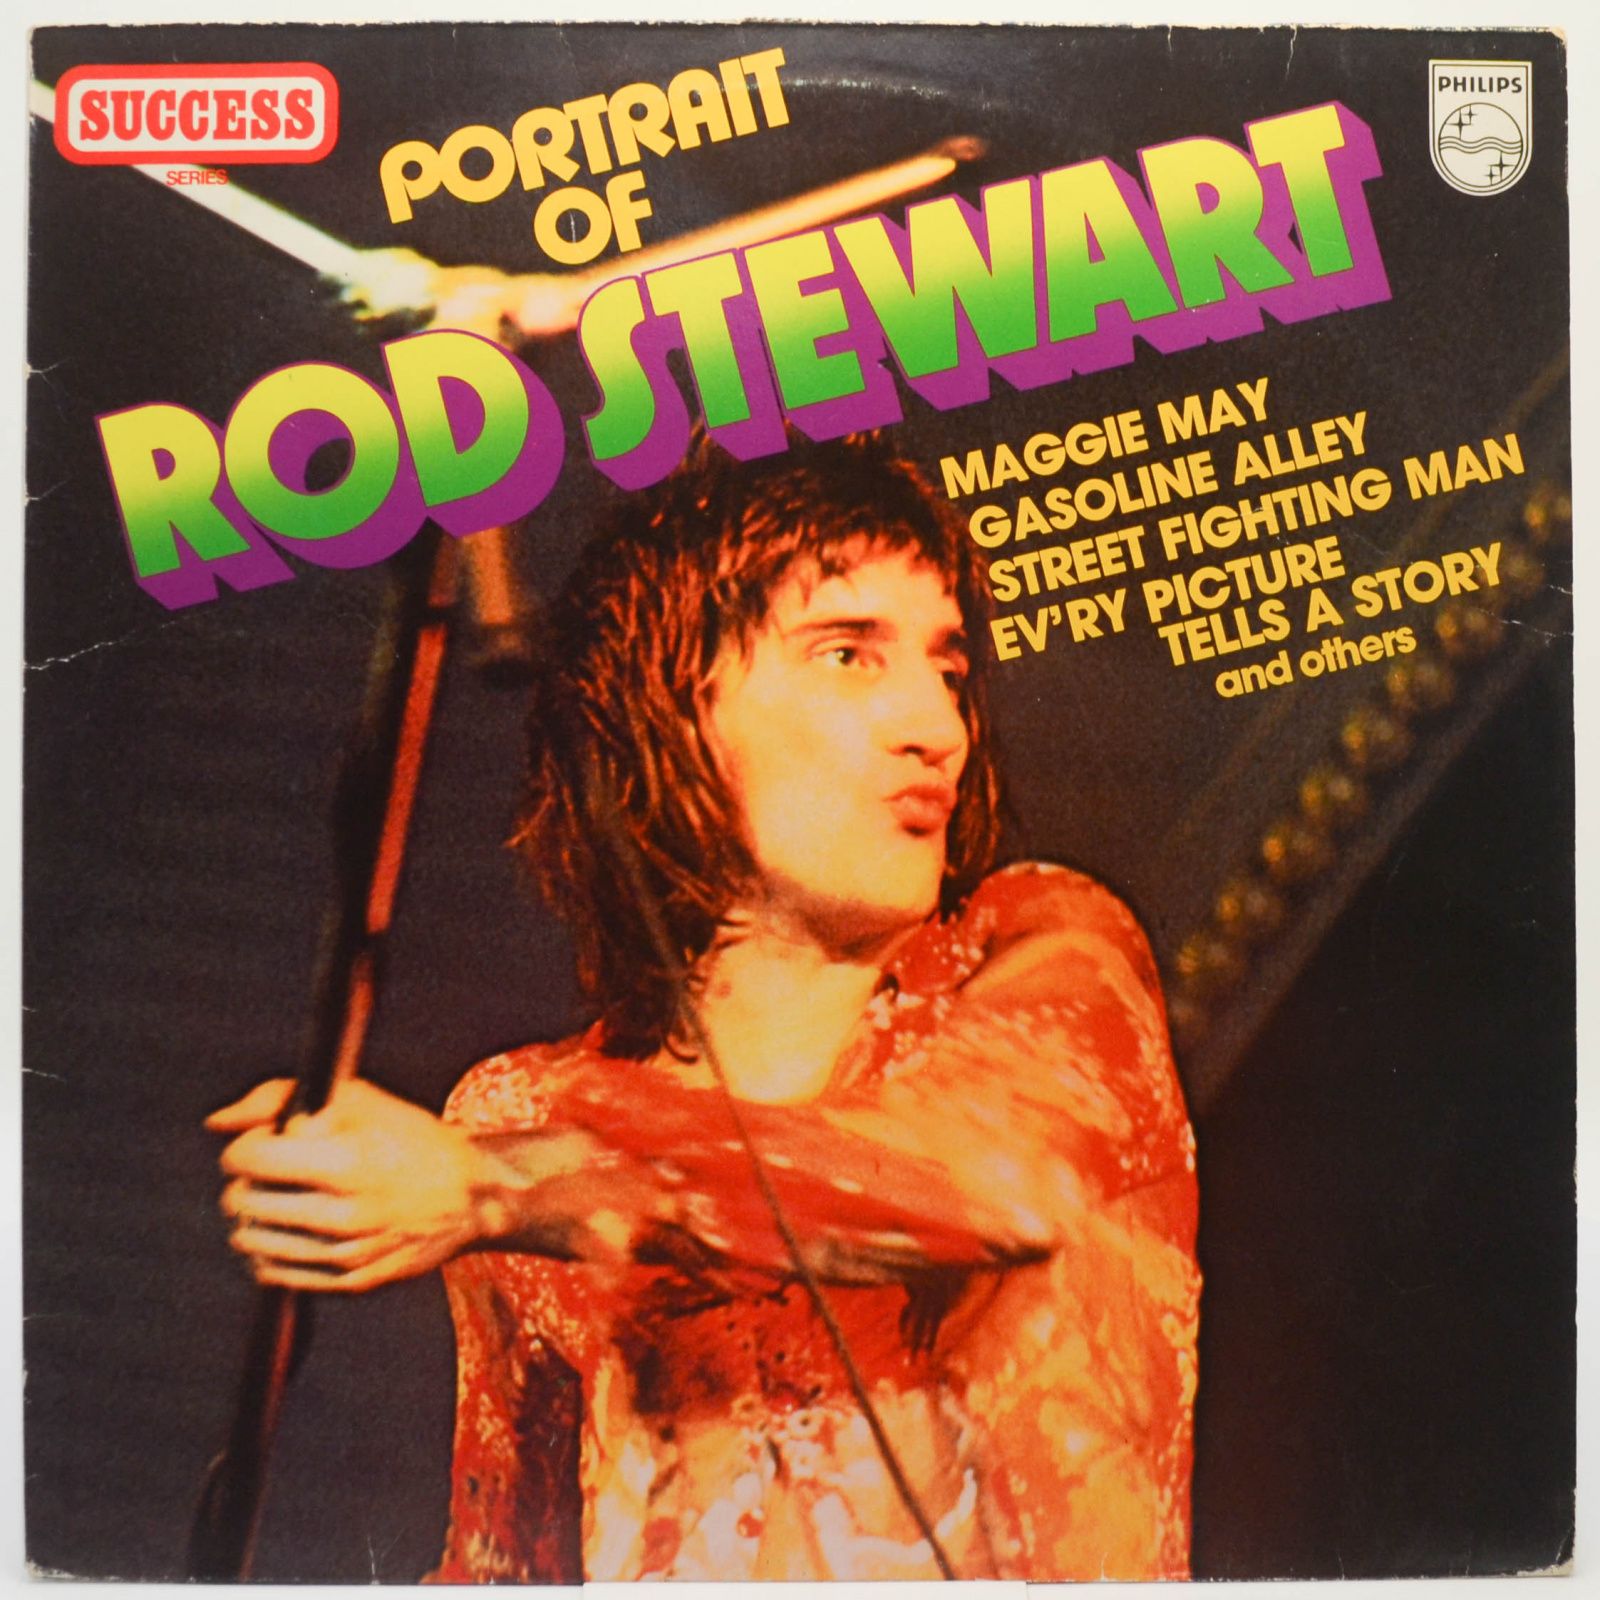 Rod Stewart — Portrait Of Rod Stewart, 1980